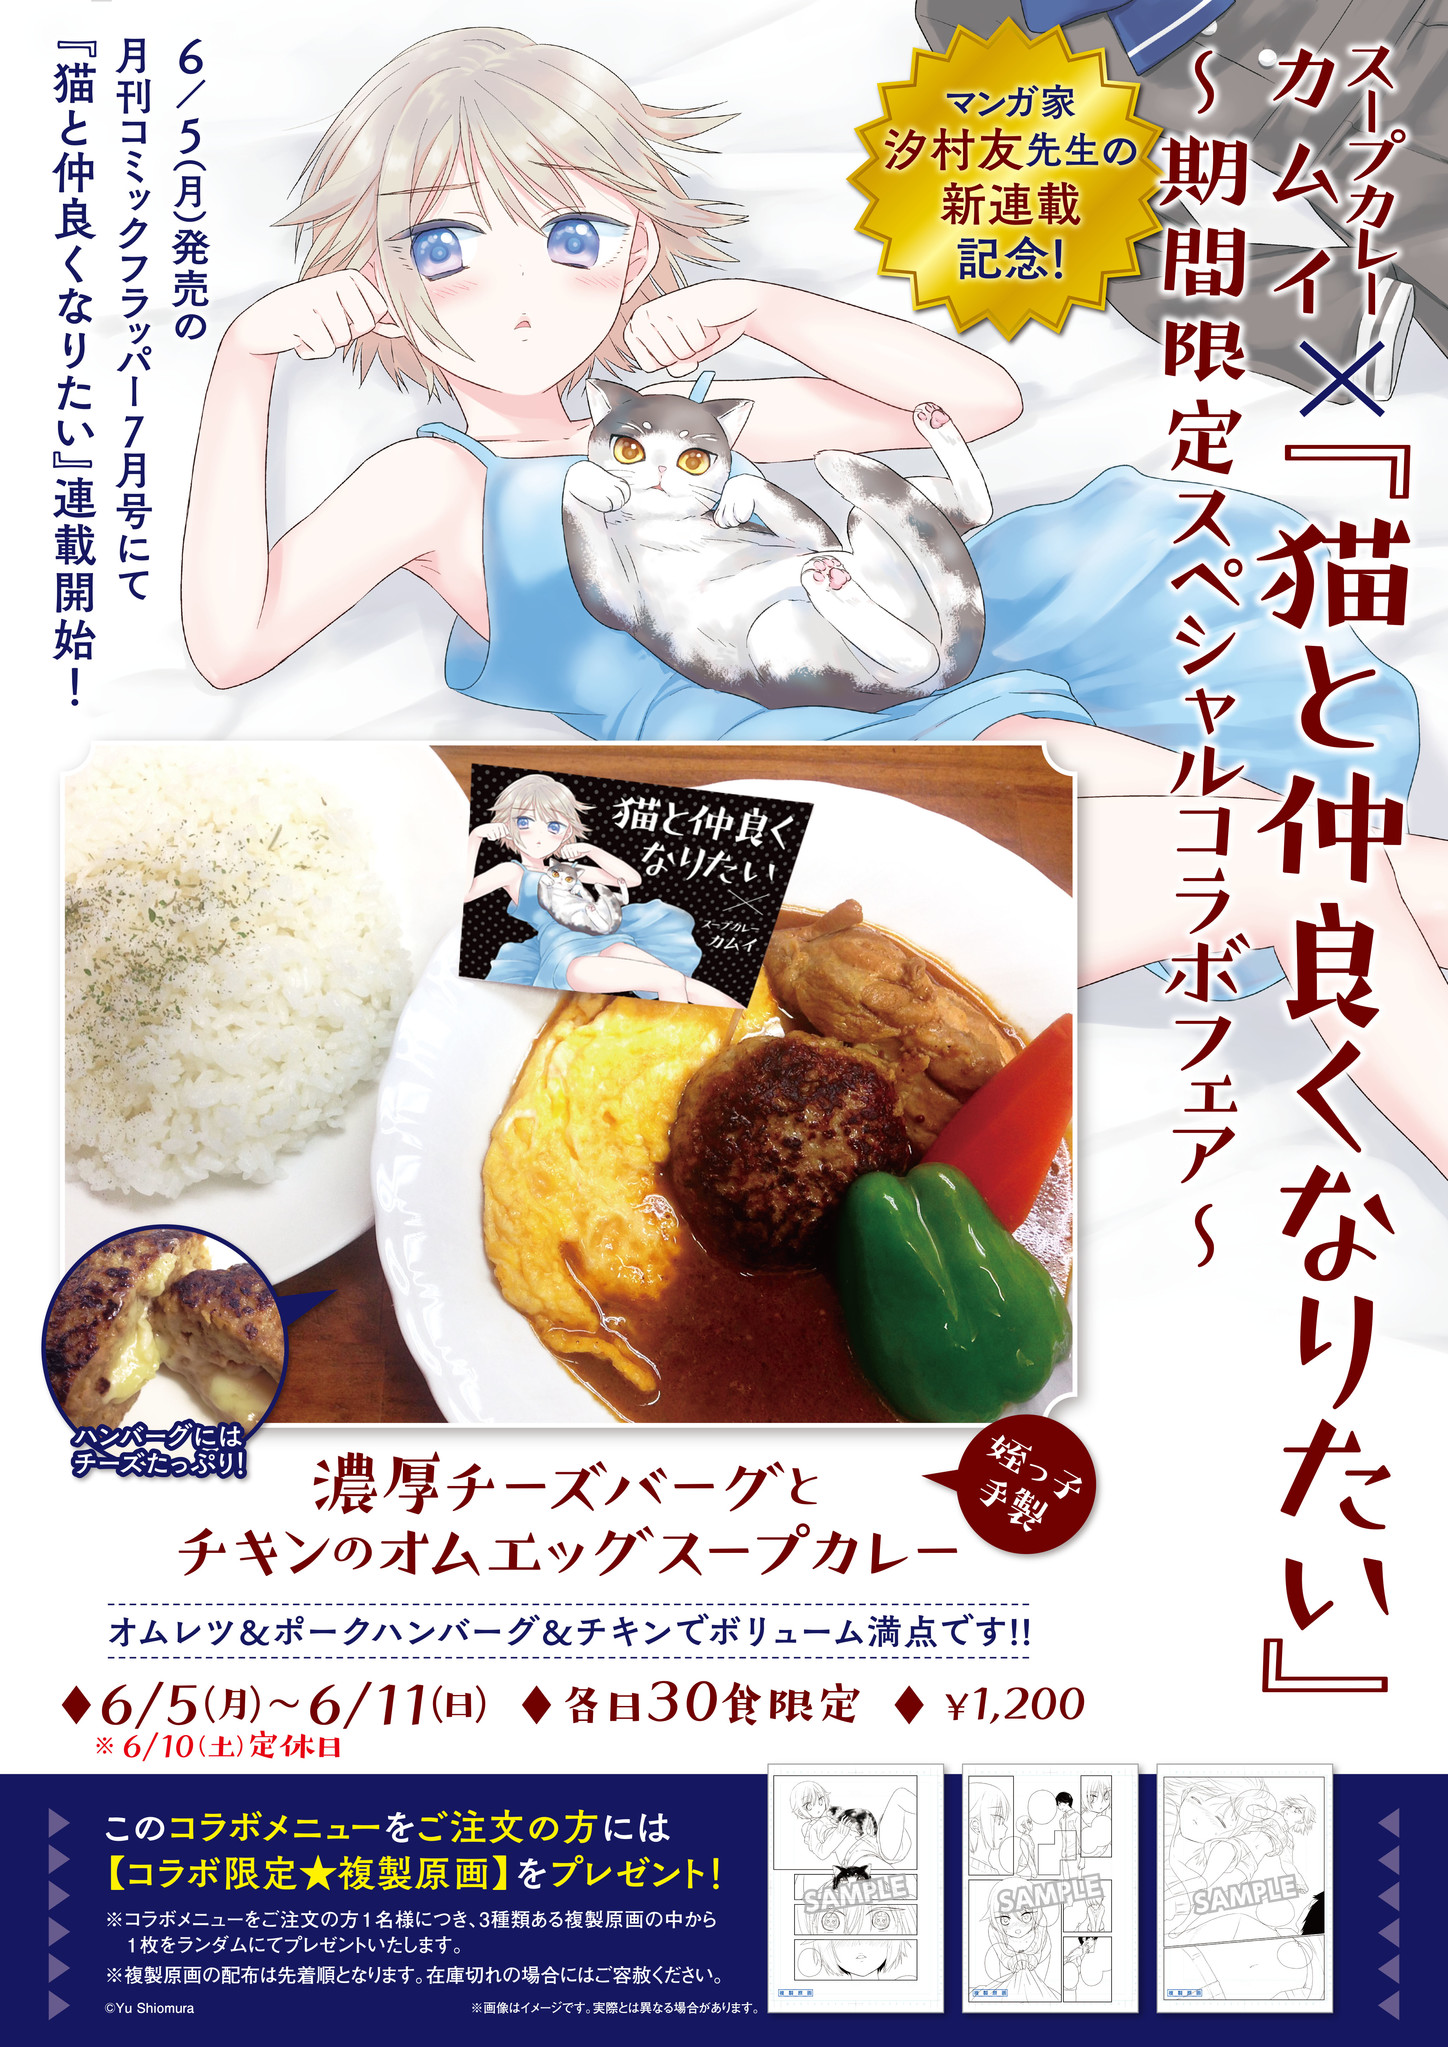 スープカレーカムイとのコラボも実施 汐村友による新連載が 月刊コミックフラッパー7月号 でスタート 株式会社kadokawaのプレスリリース